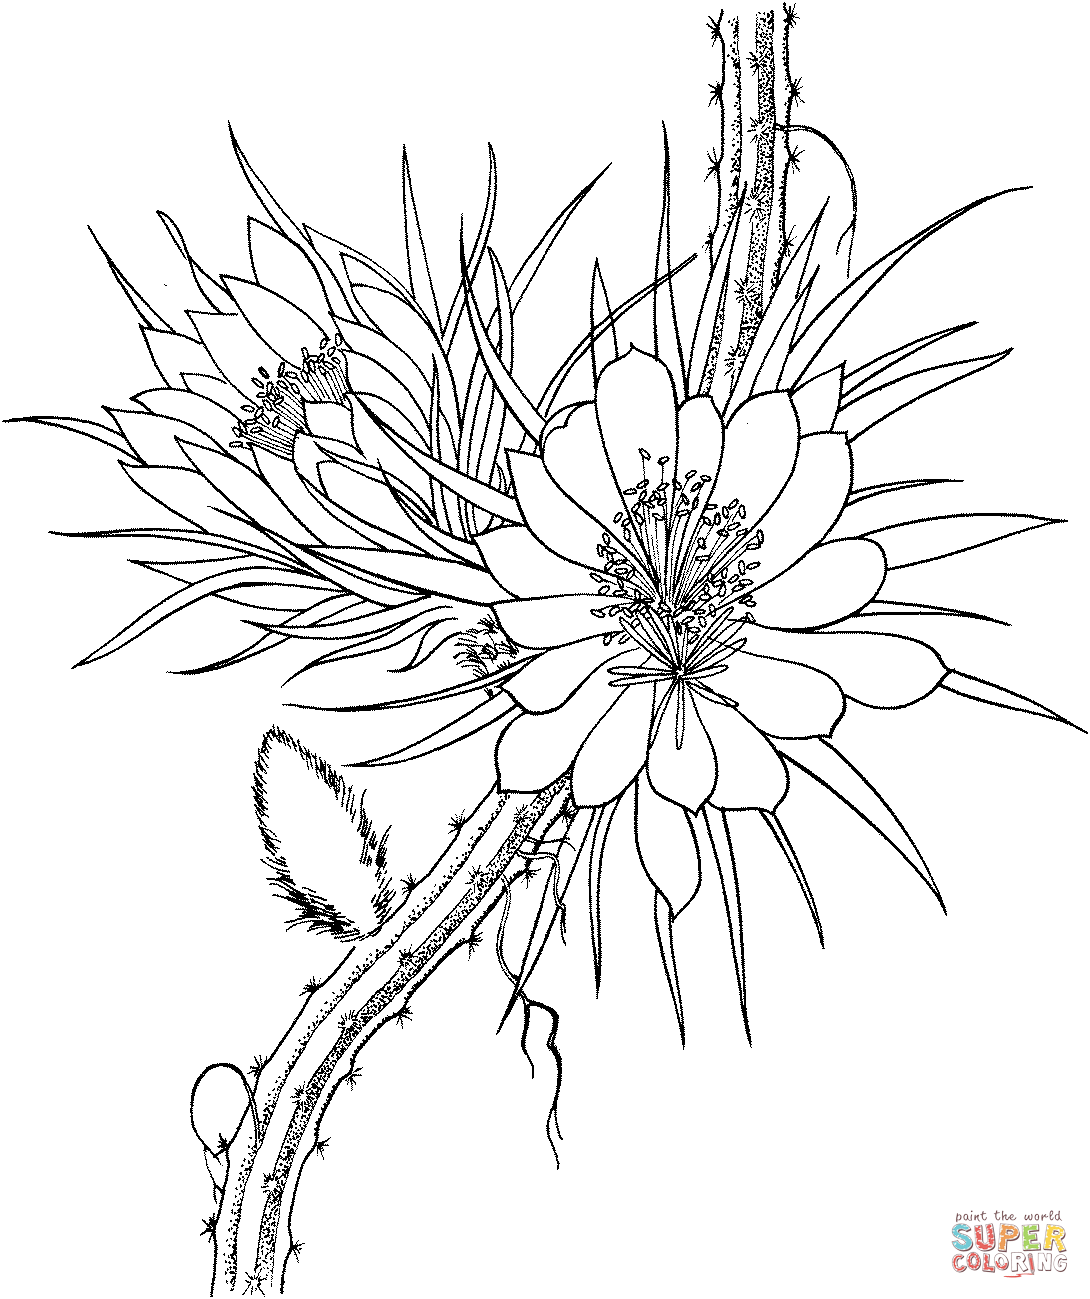 Selenicereus Grandiflorus Rainha da Noite Cacto from Cactus